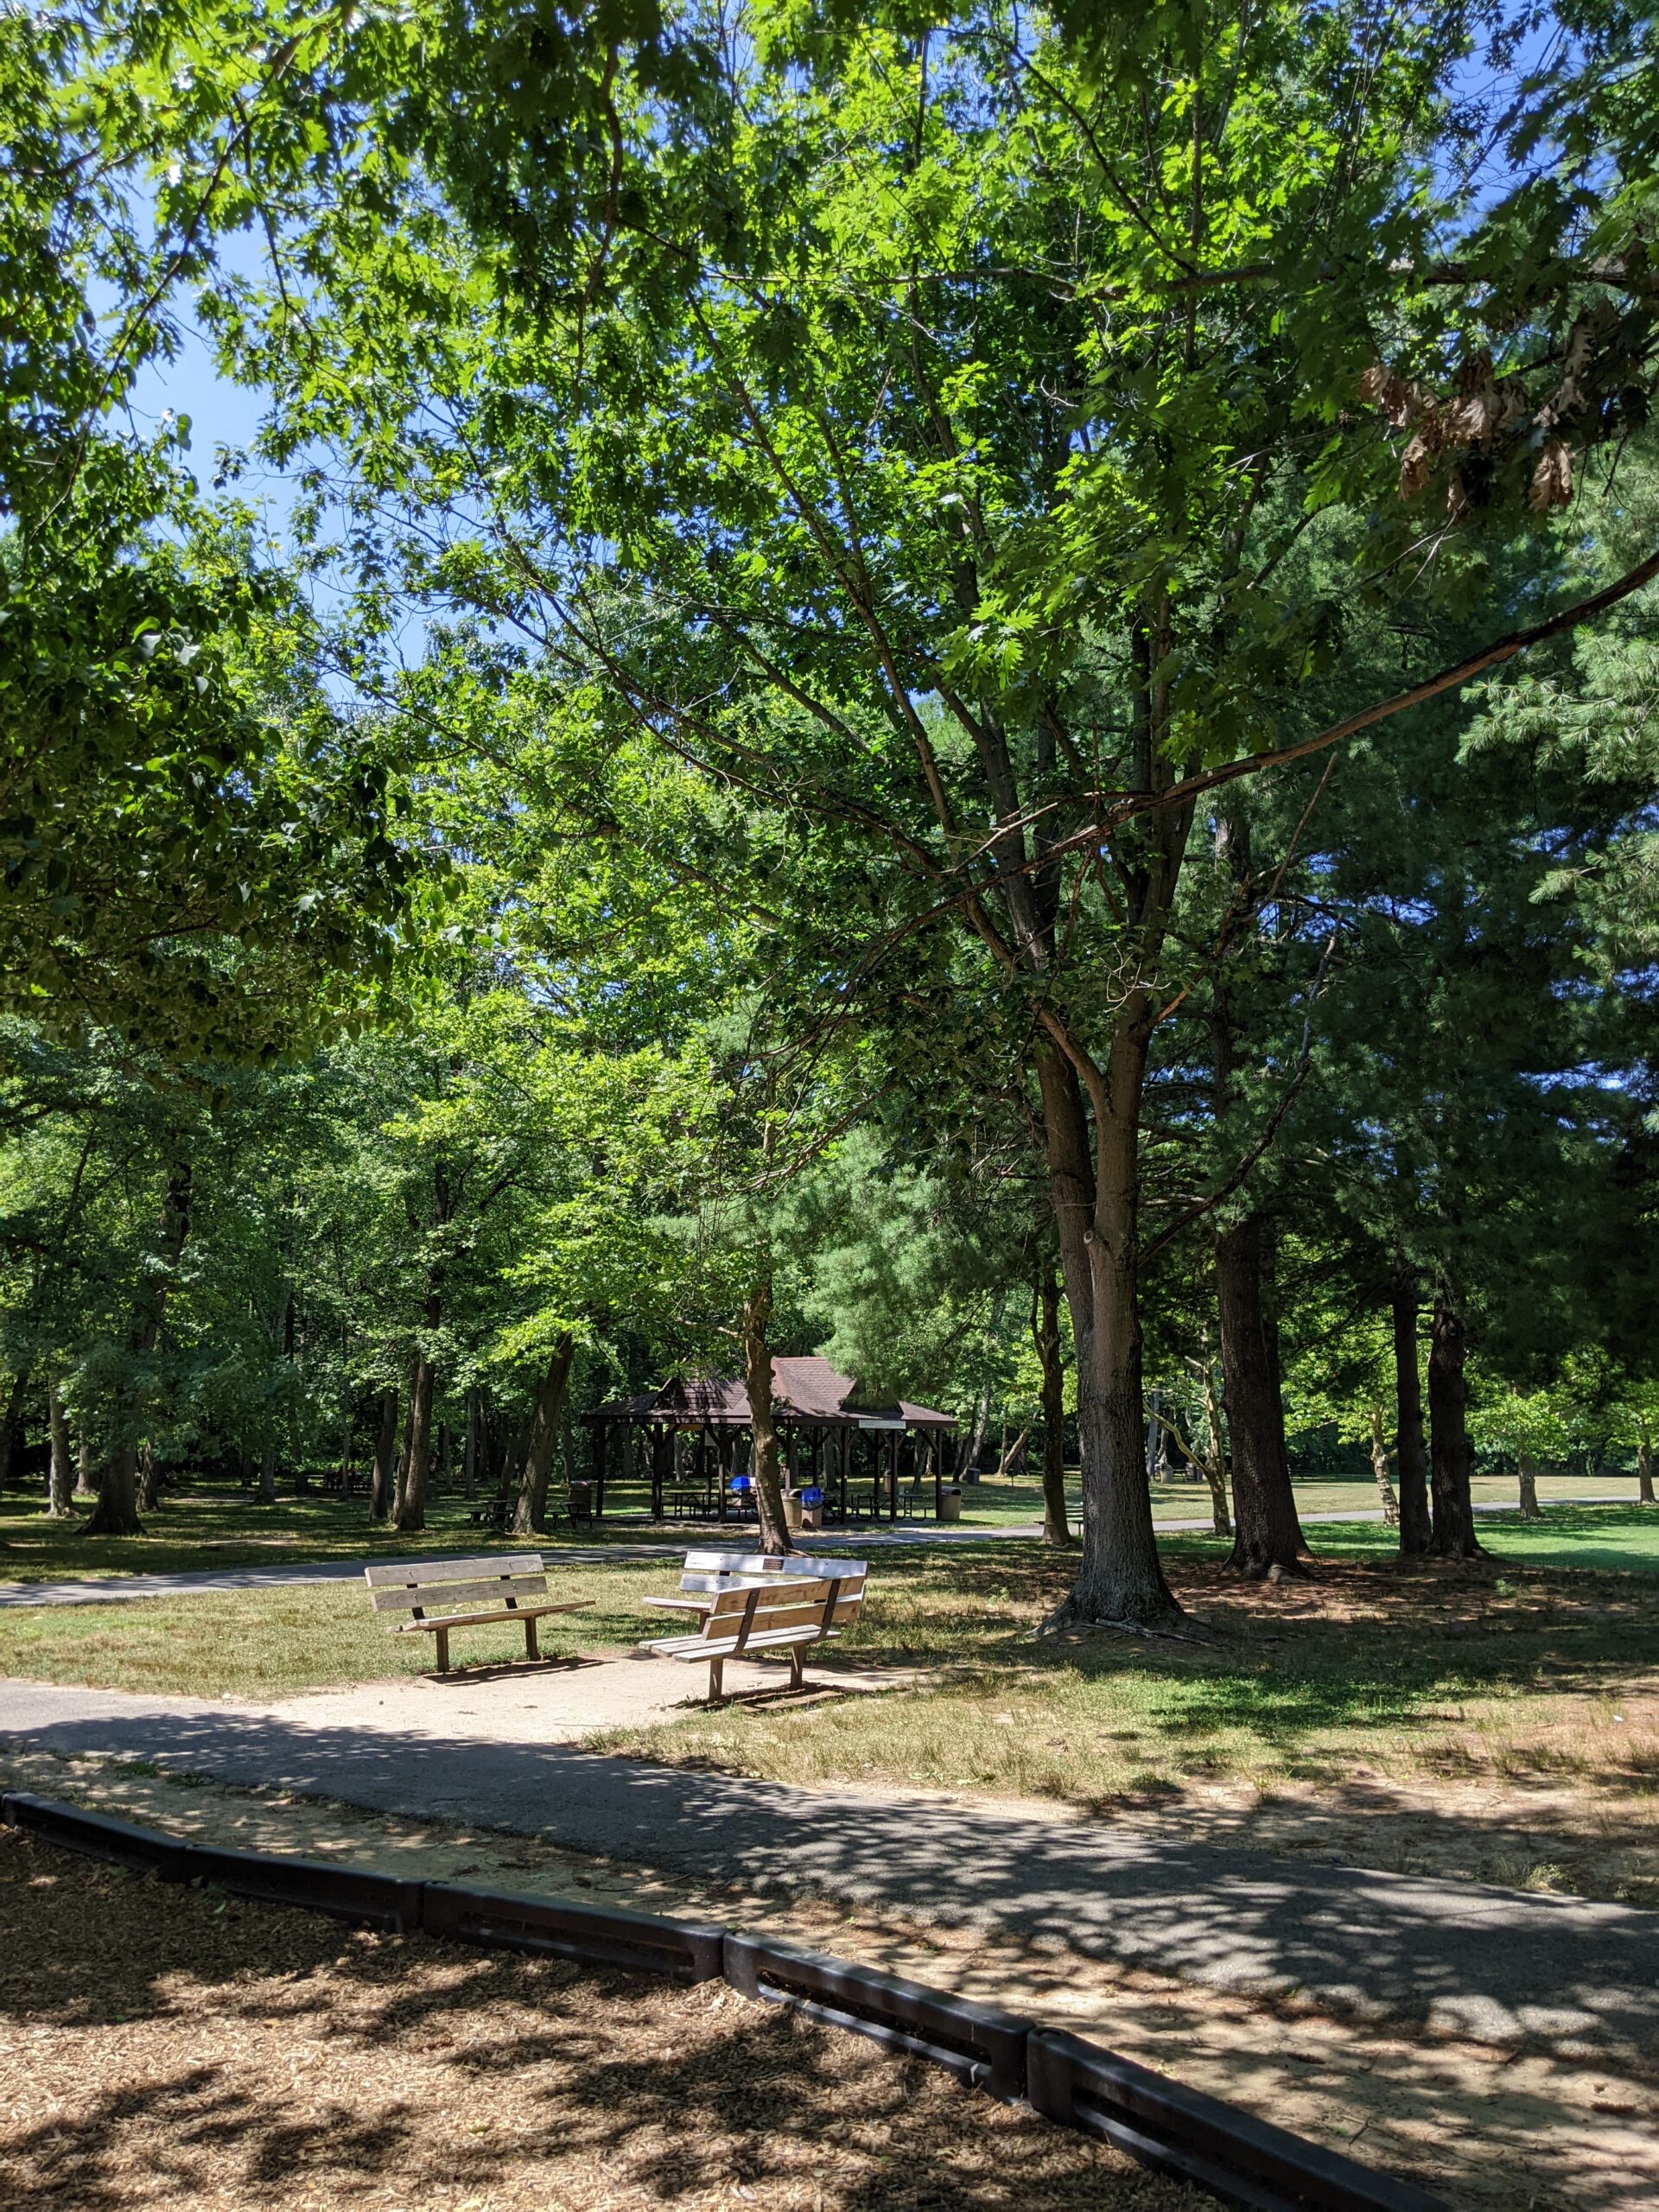 Veteran's Park in Hamilton Township NJ - Shady - Benches under tree